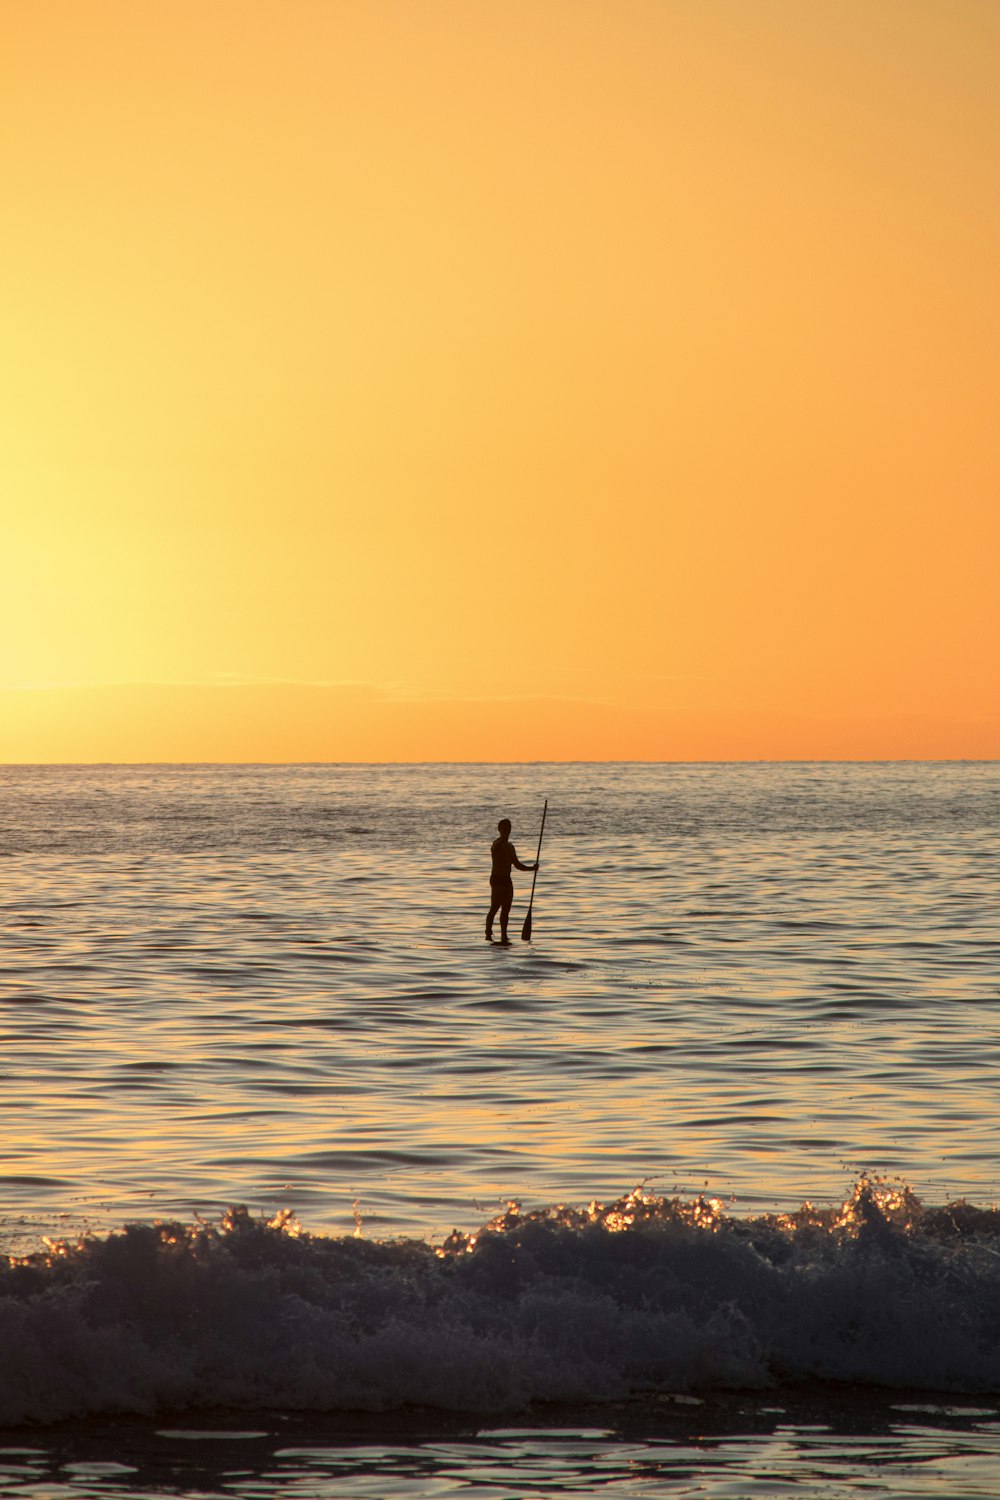 Una persona en una tabla de surf en el océano al atardecer